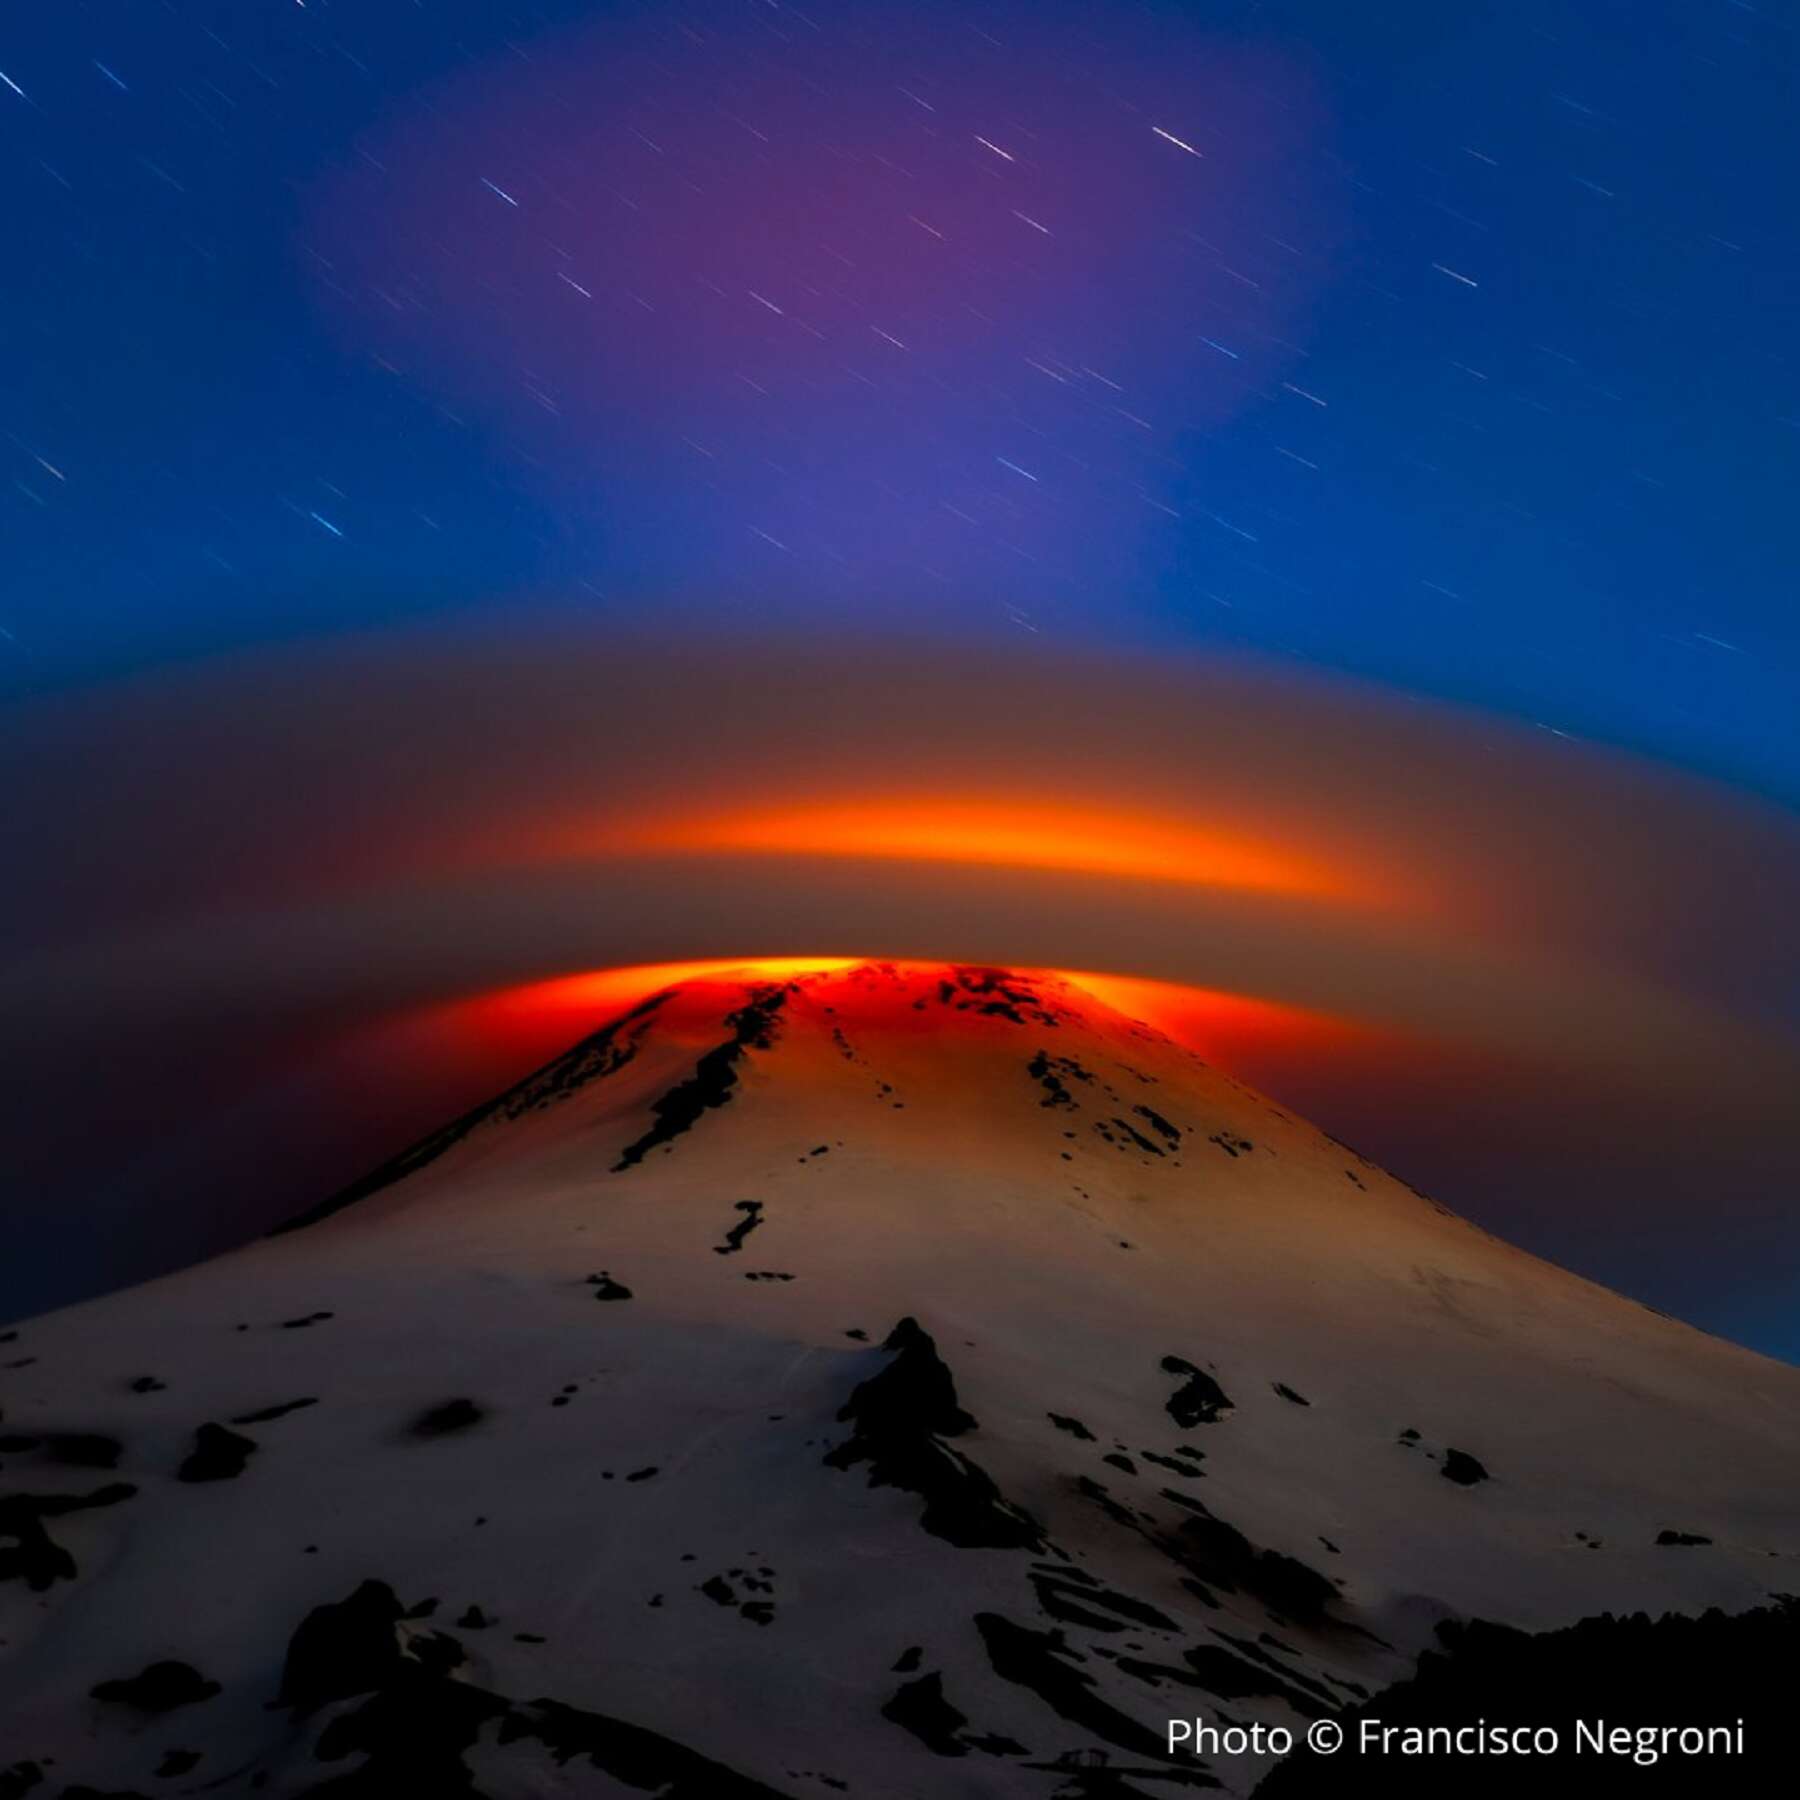 Magnifique : un étonnant nuage lenticulaire au-dessus d’un volcan en activité !